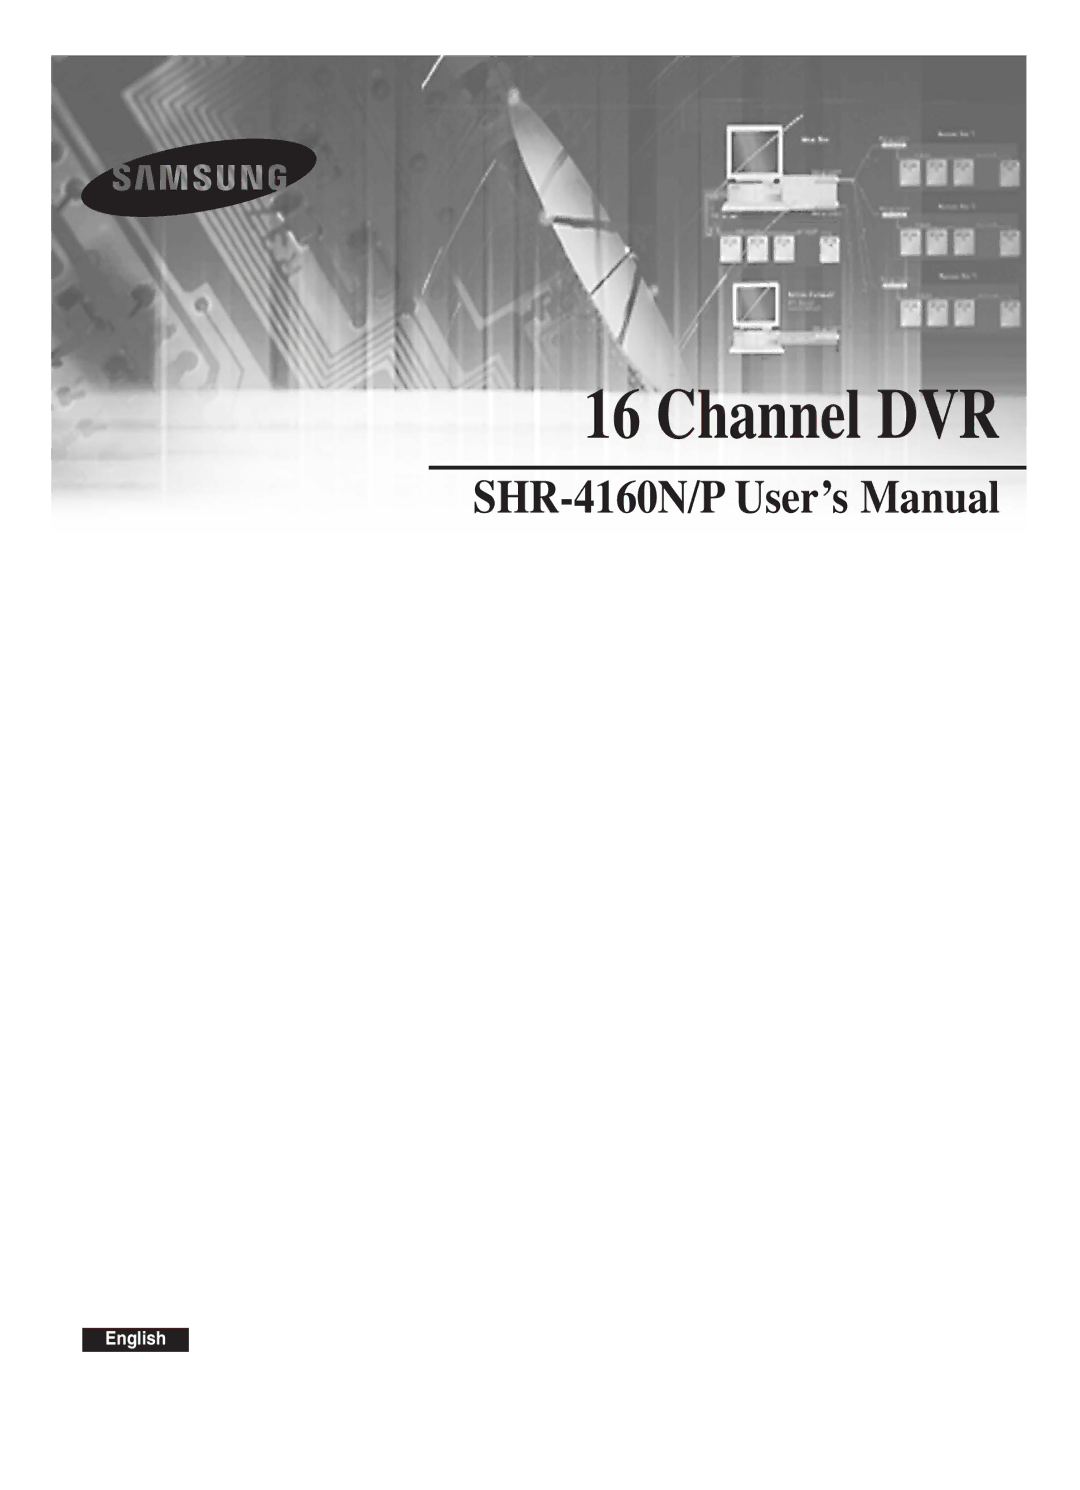 Samsung SHR-4160P manual Channel DVR 